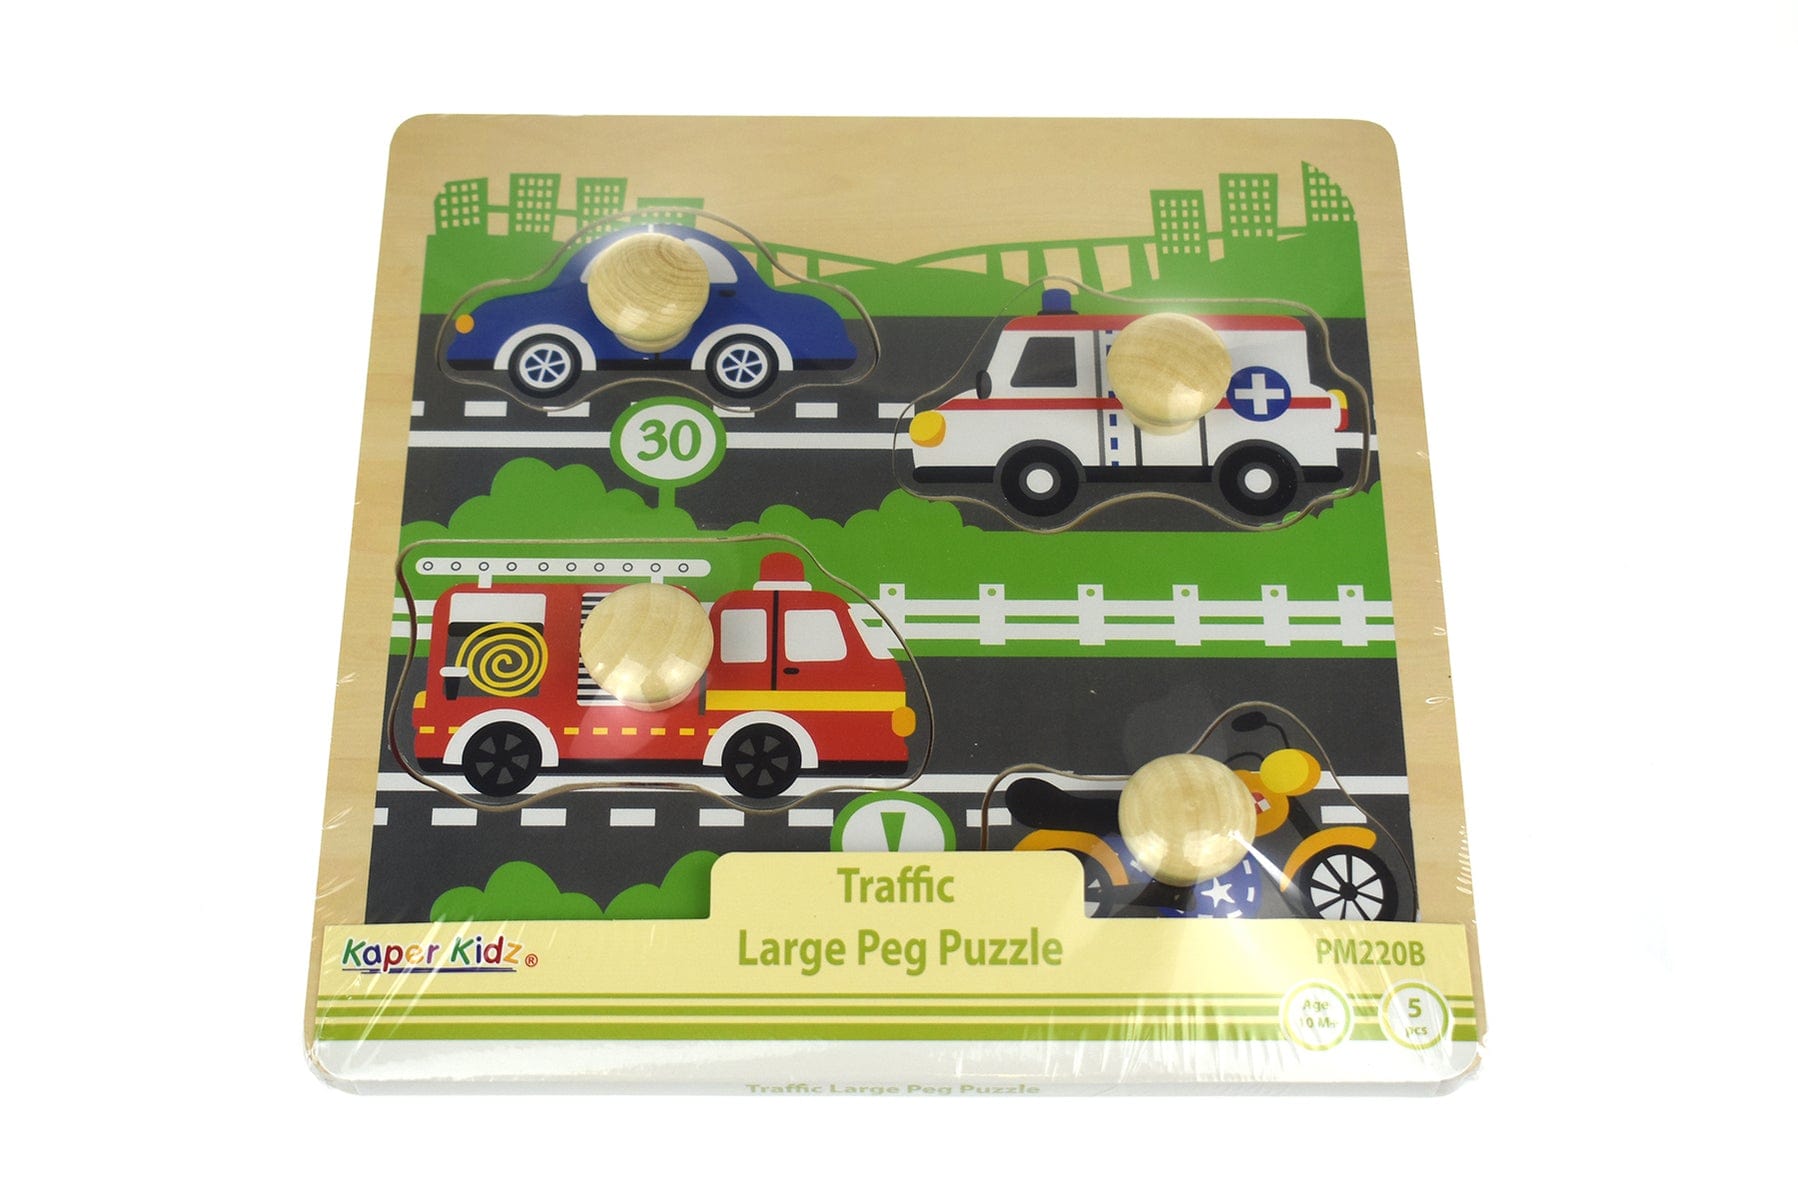 Traffic Large Peg Puzzle